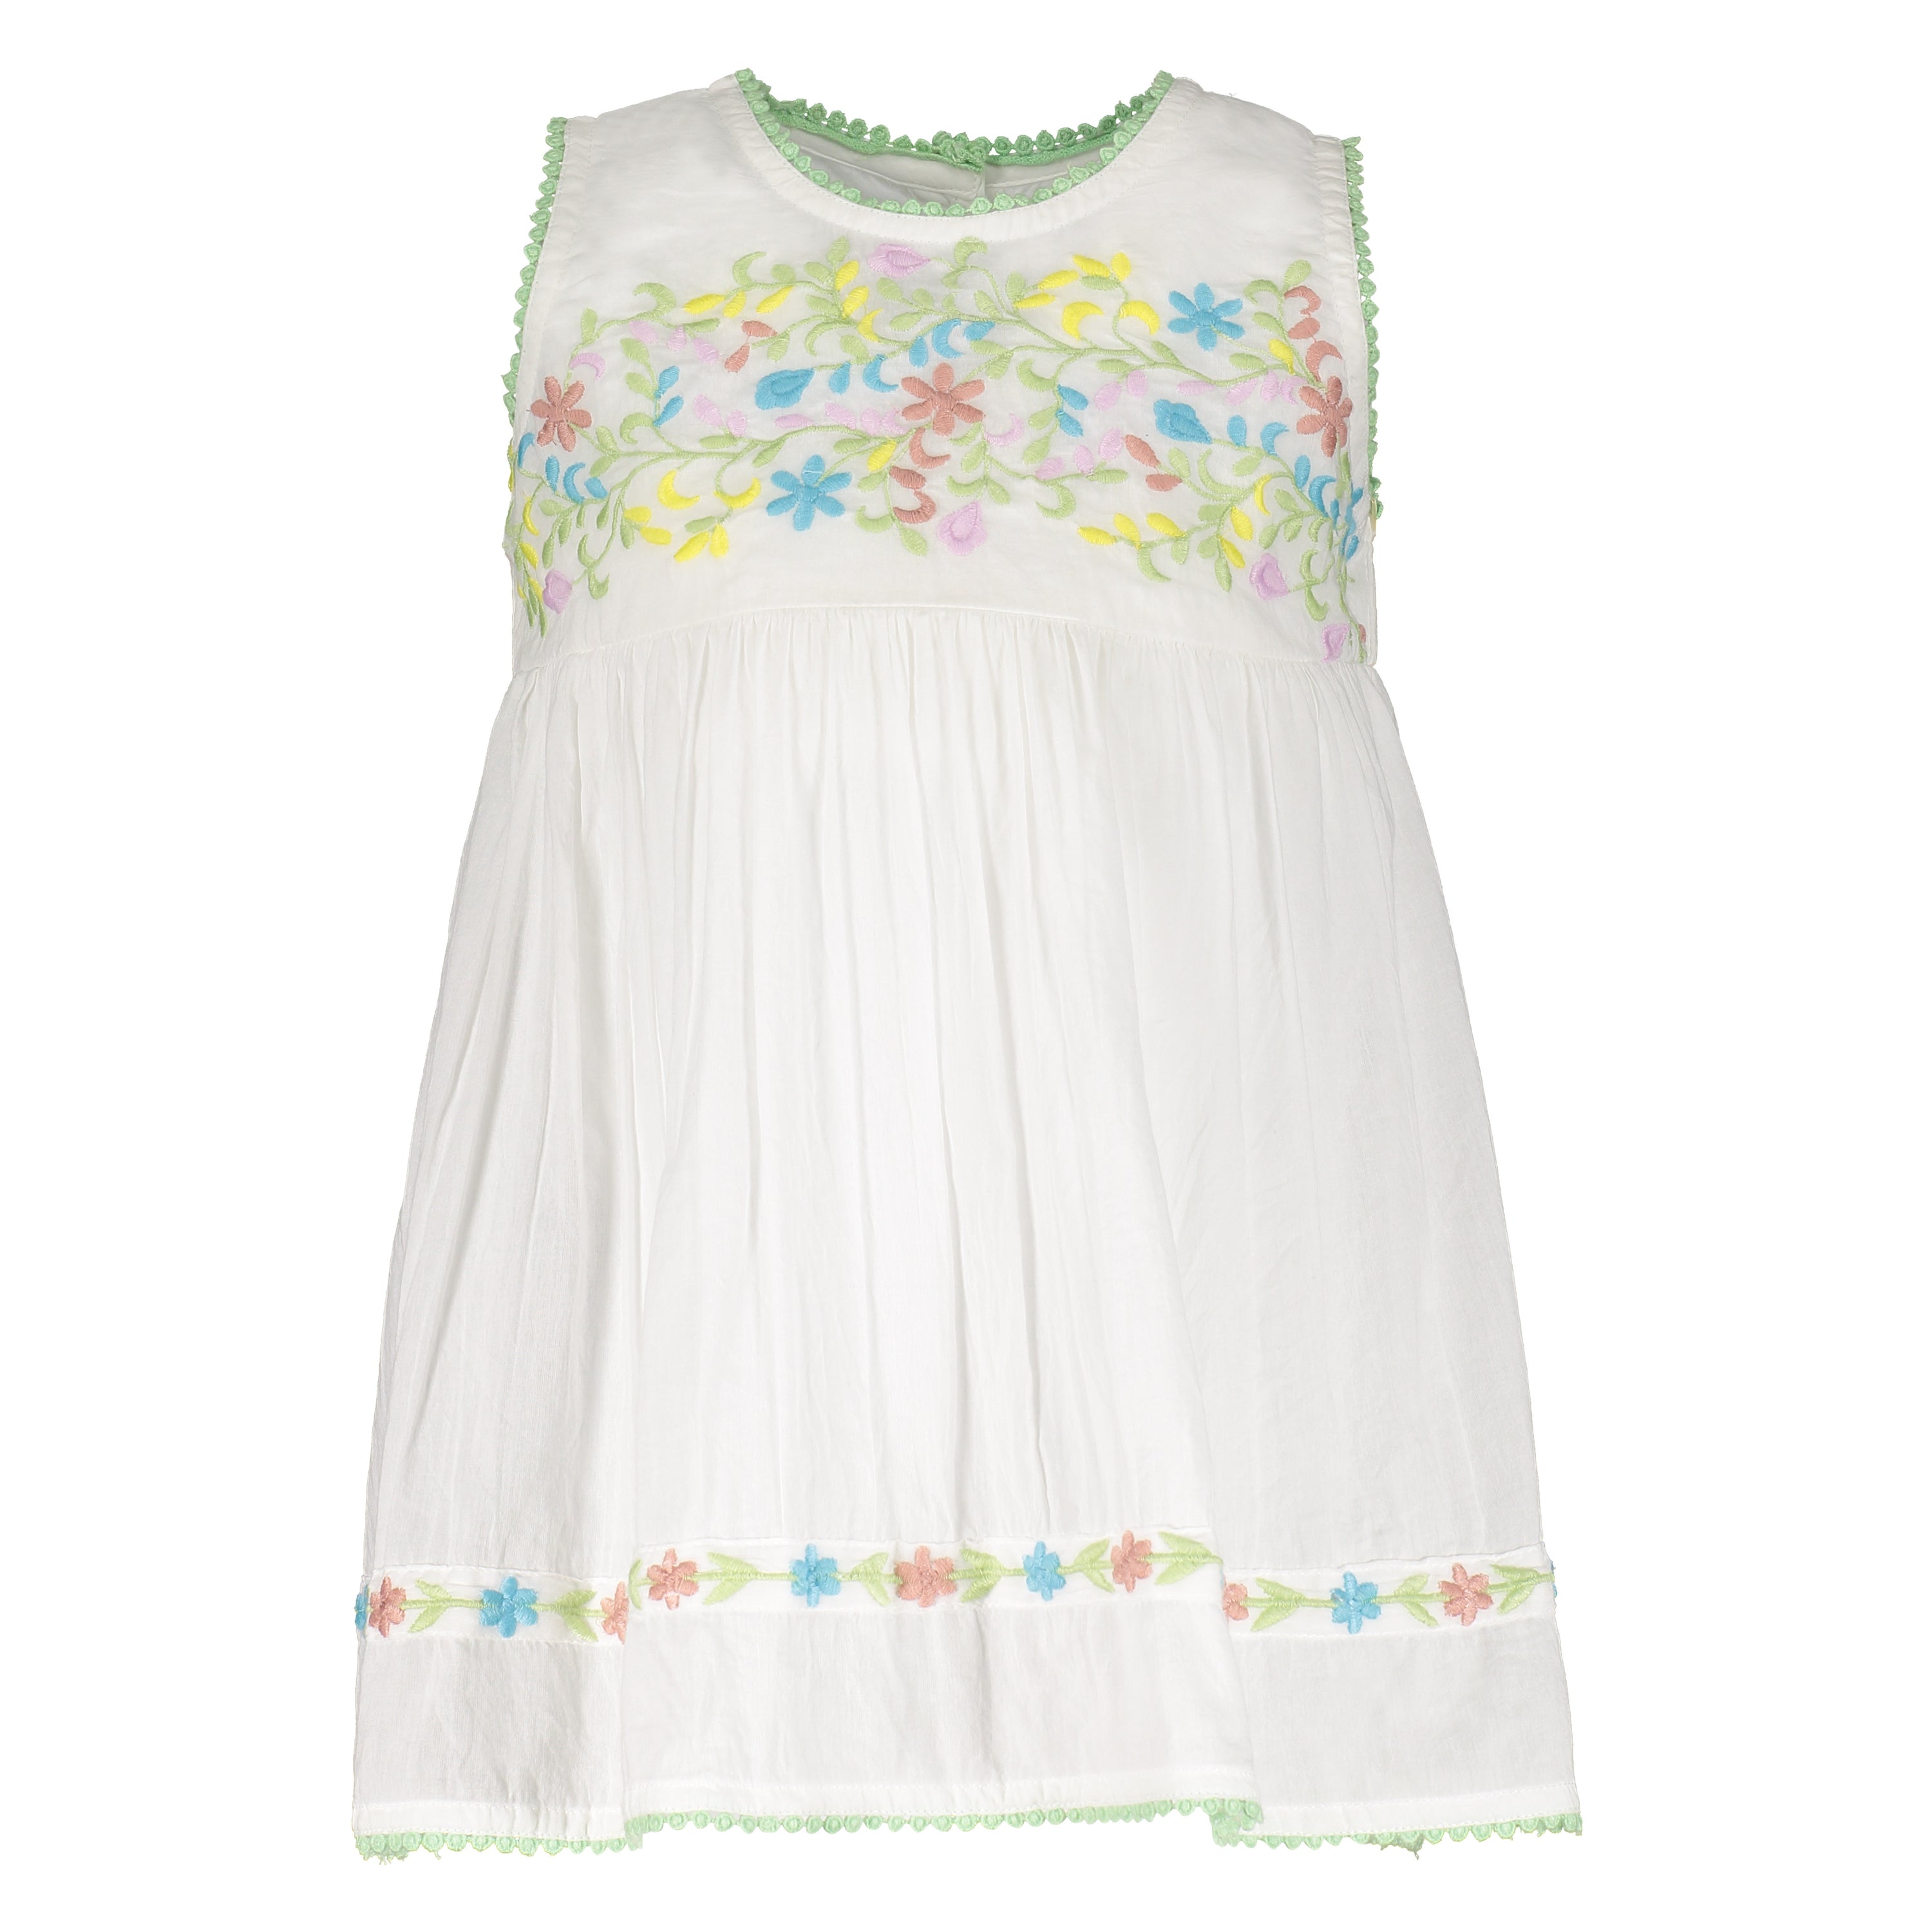 Adrielle Pastel Floral Dress